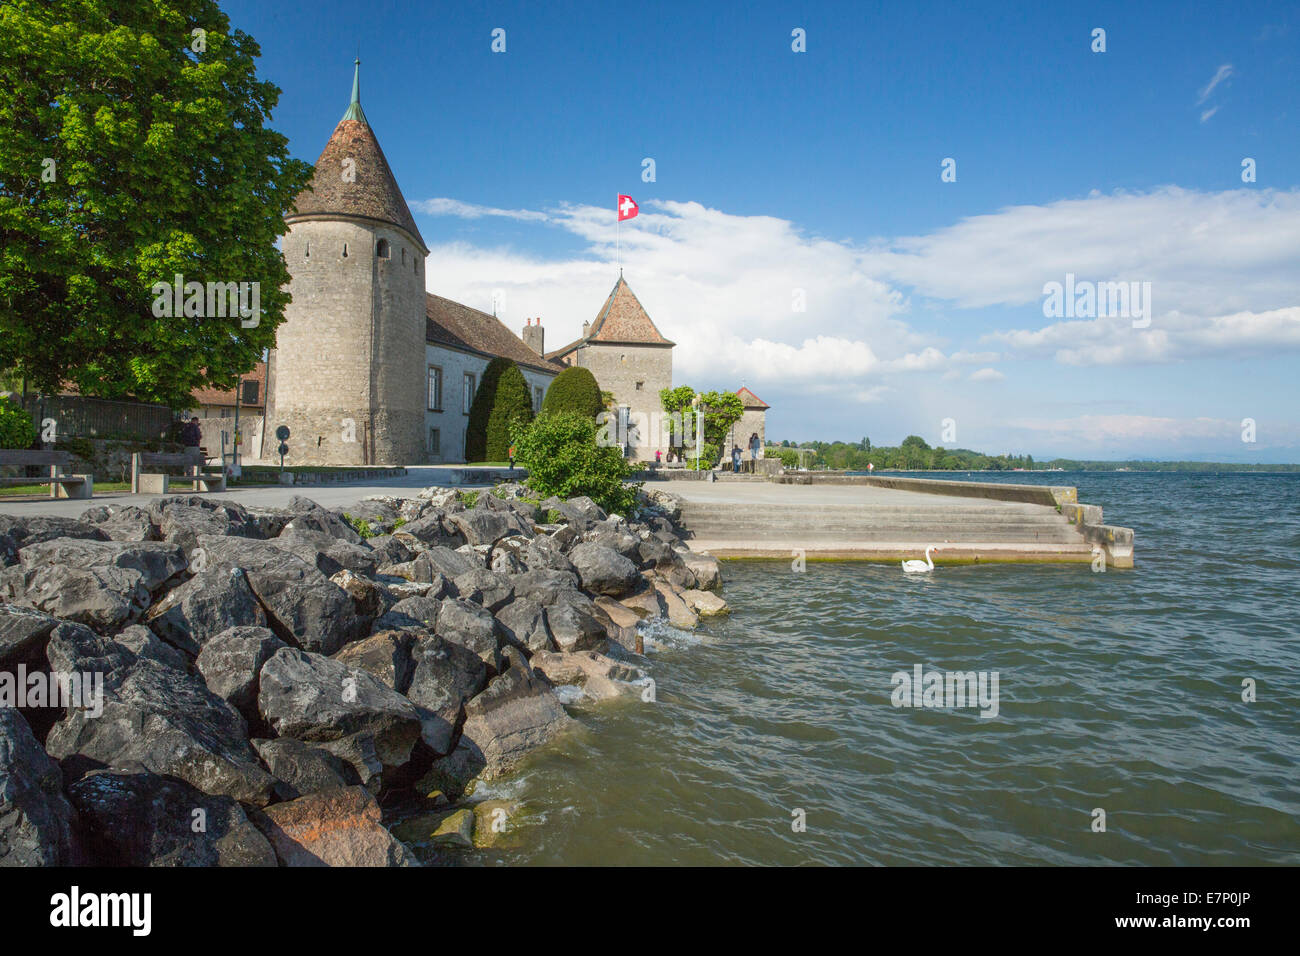 La Cote VD, castello, ruolo, roll, il lago di Ginevra, Canton, VD, Vaud, Western Svizzera romanda, sul lago di Ginevra, Svizzera, Europa Foto Stock